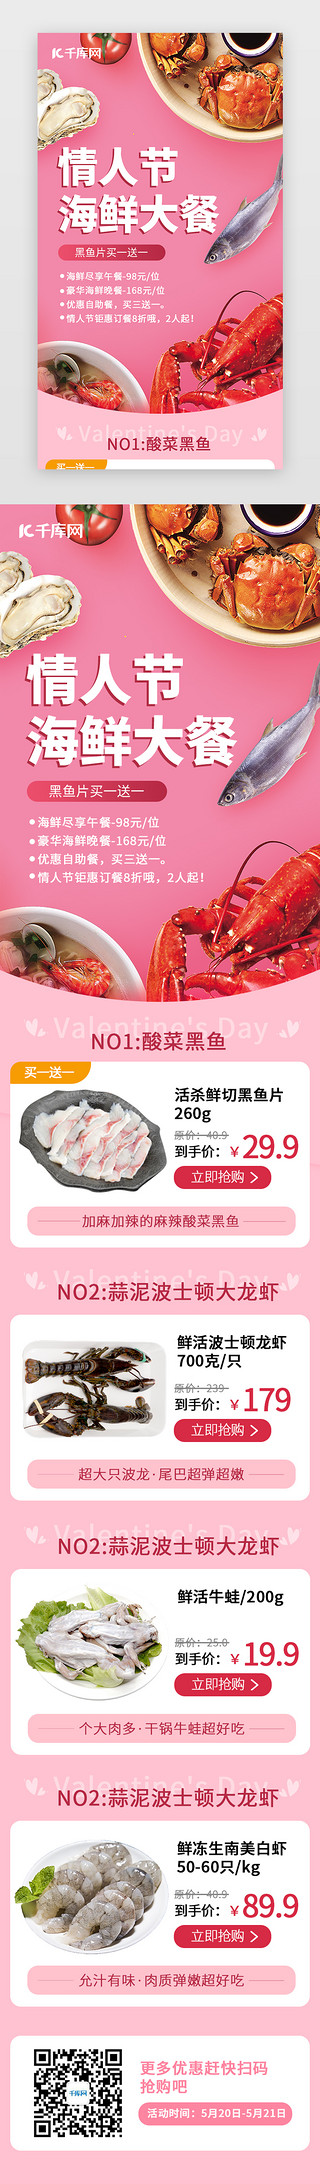 周日大餐UI设计素材_情人节海鲜大餐H5